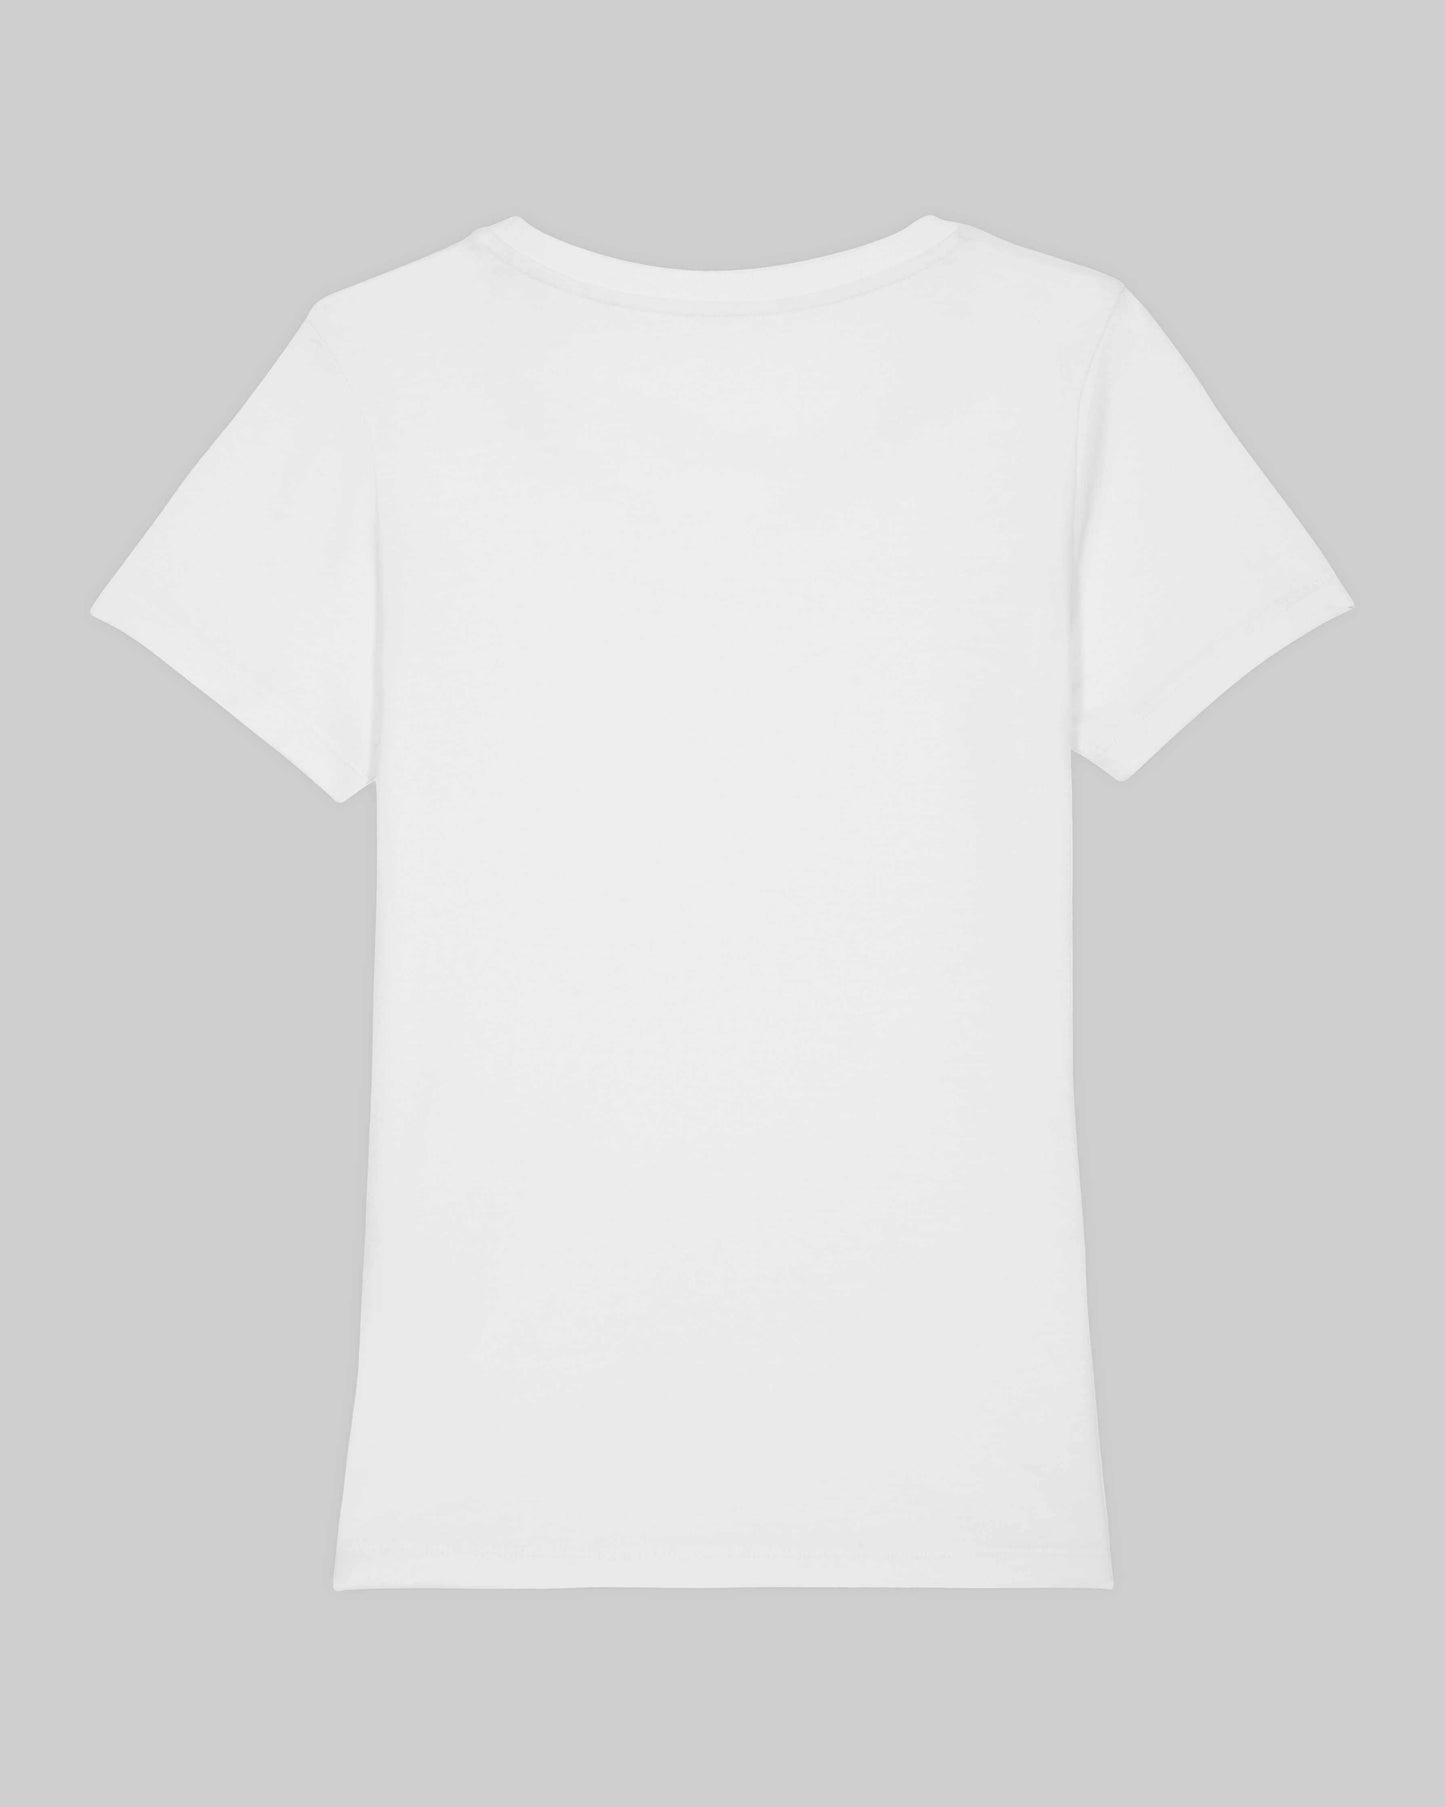 EINHORST® Organic Shirt tailliert in "Weiß" mit dem Motiv "pride Regenbogen" in der Kombination schwarzer Regenbogen mit schwarzer Schrift, Bild von Shirt von hinten